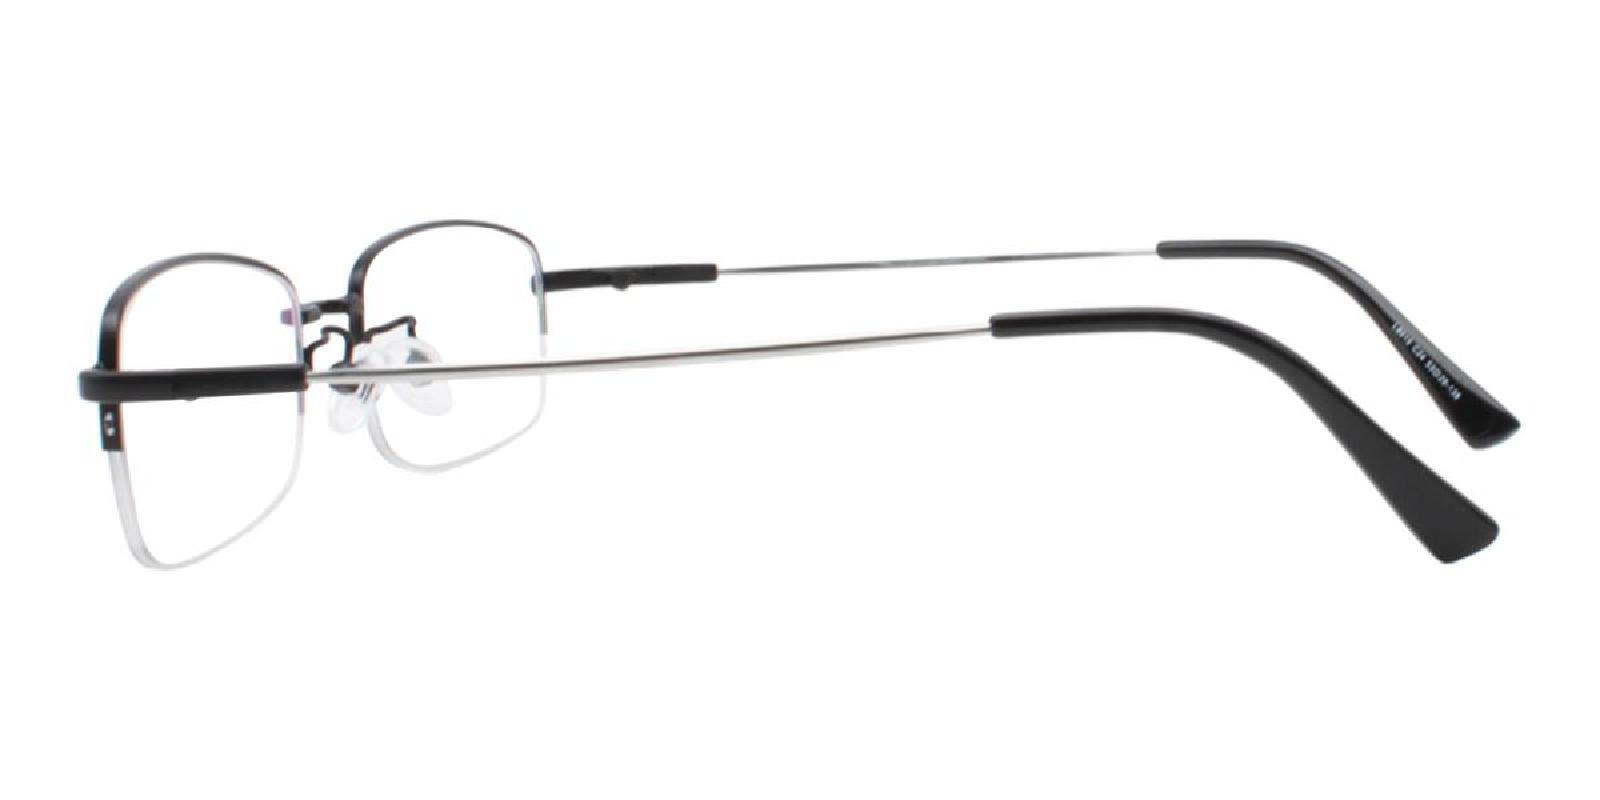 Limboda-Black-Rectangle-Metal-Eyeglasses-detail